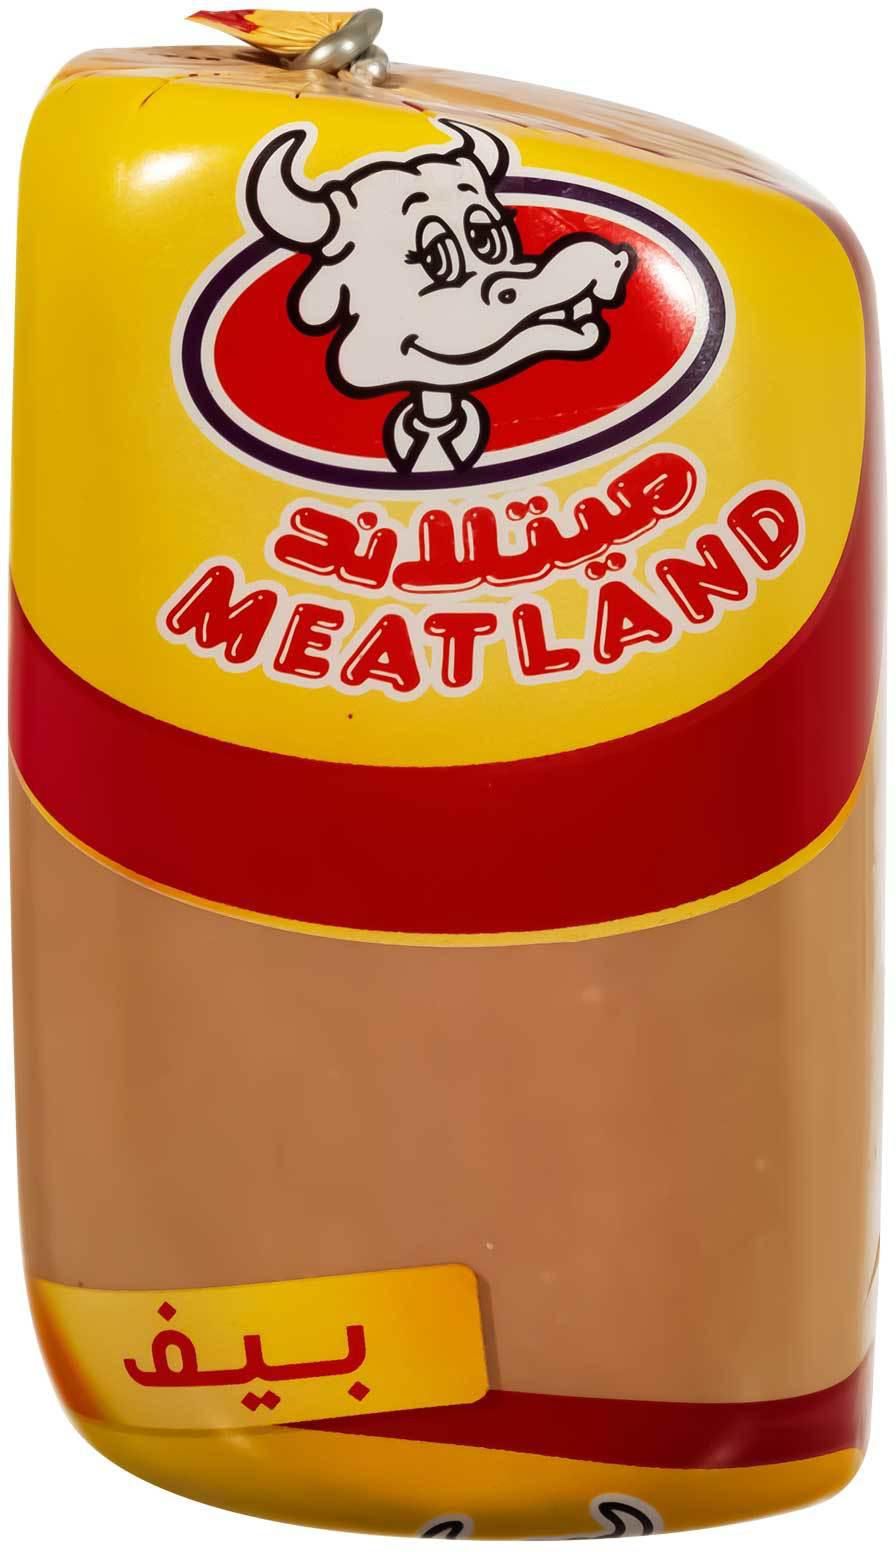 Meatland Luncheon Beef 1 kilo